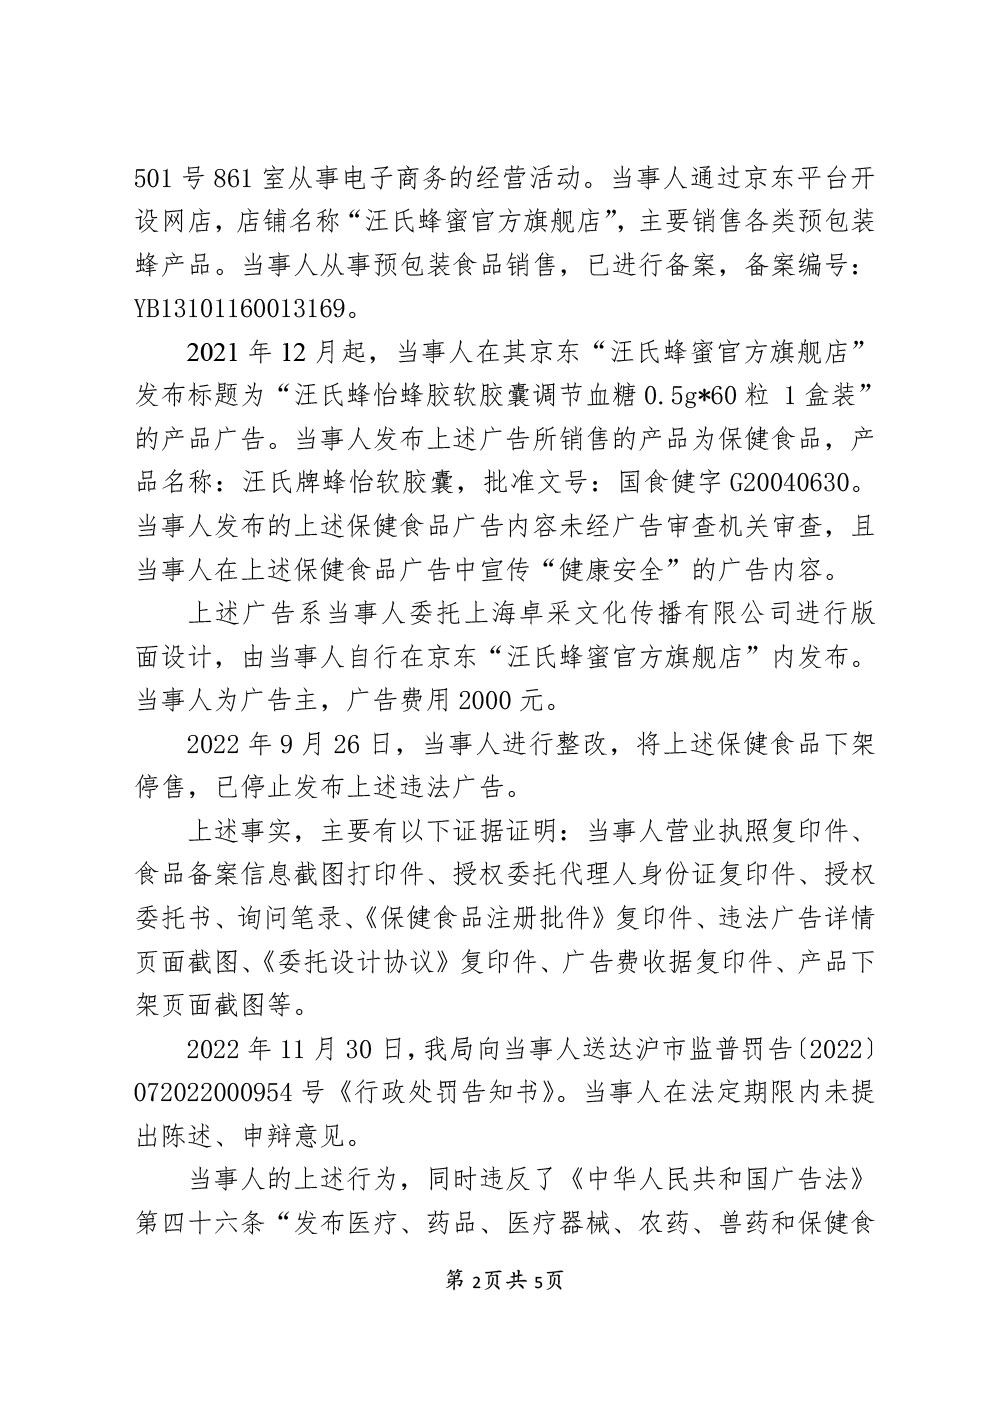 上海蜜恩电子商务有限公司利用互联网发布保健食品广告宣传健康安全案